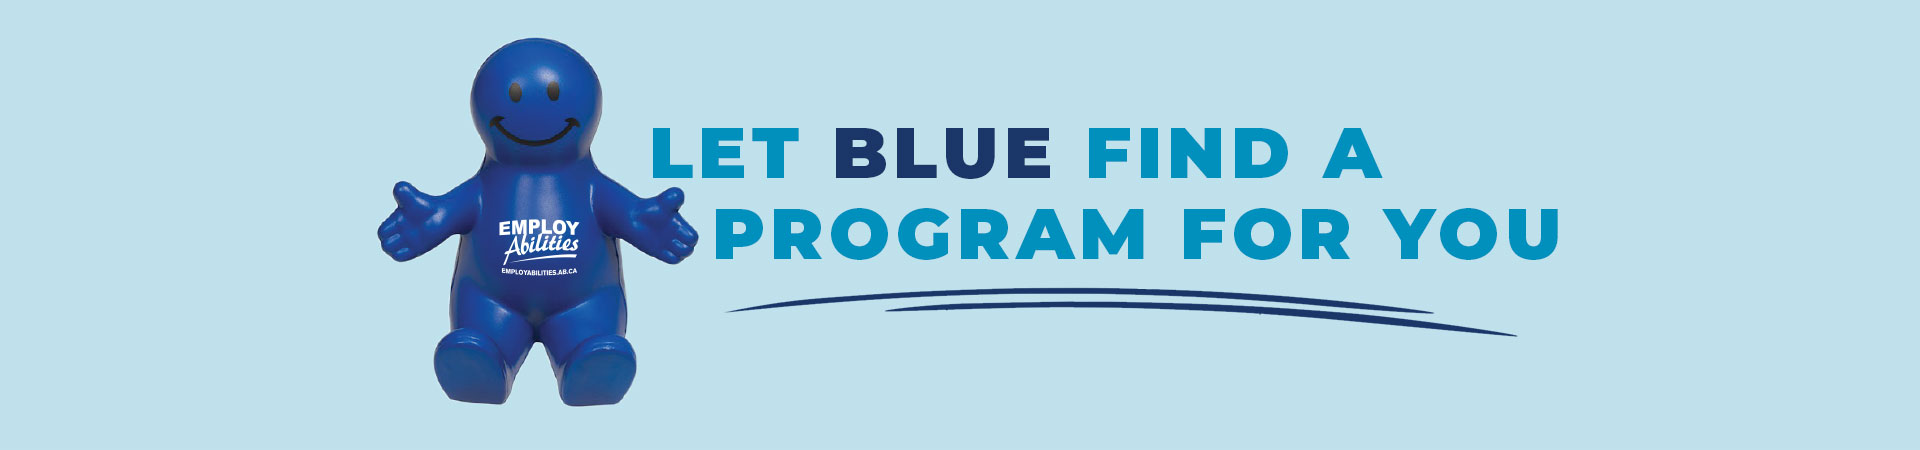 Let Blue find a program for you!